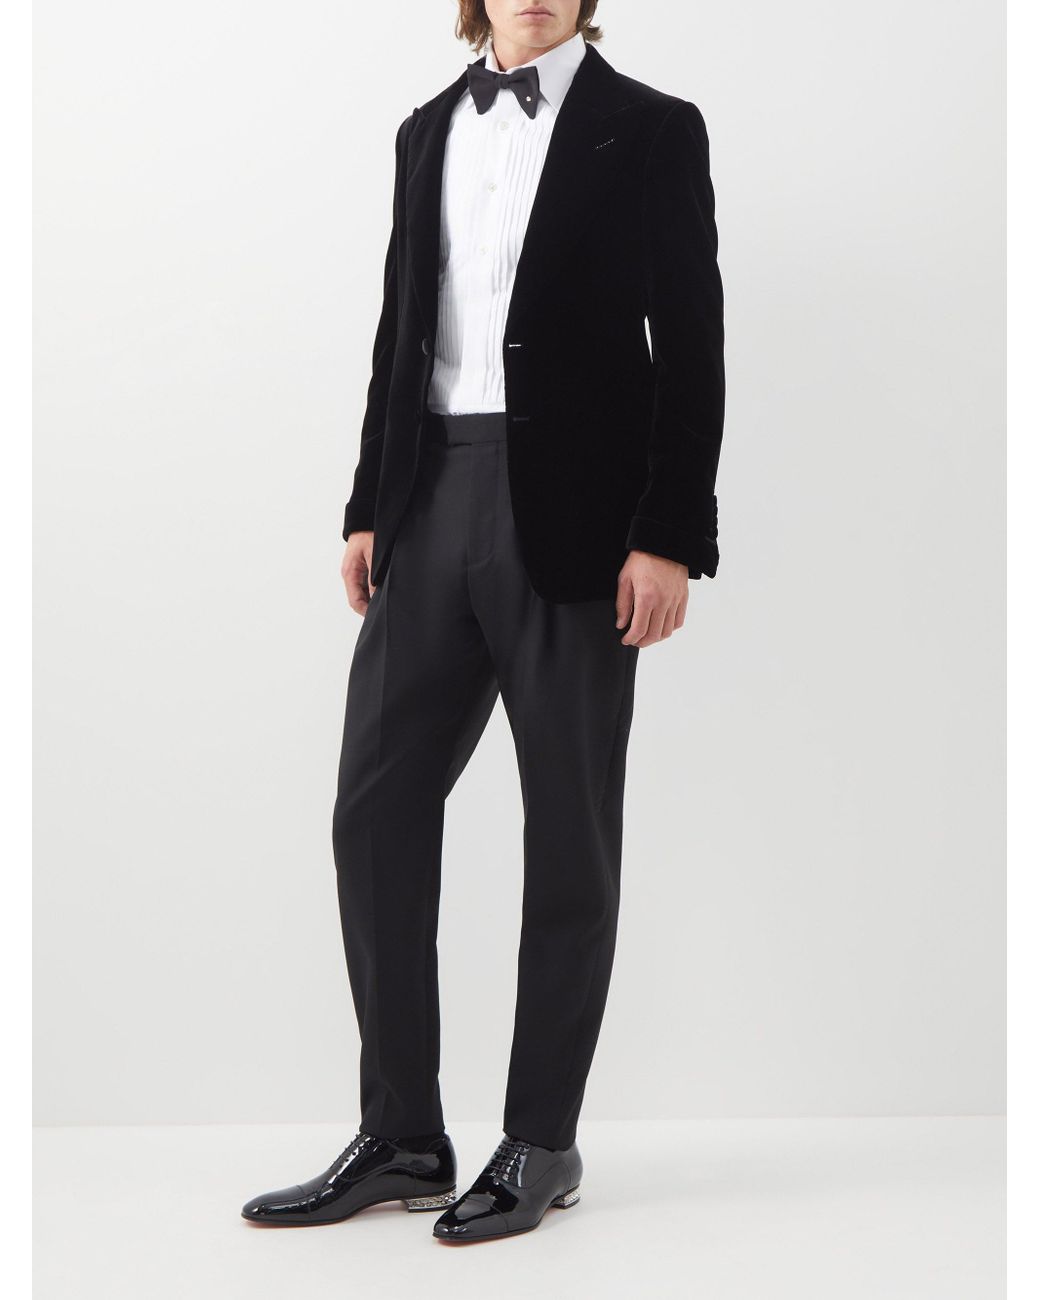 Tom Ford Shelton Velvet Tuxedo Jacket in Black for Men | Lyst